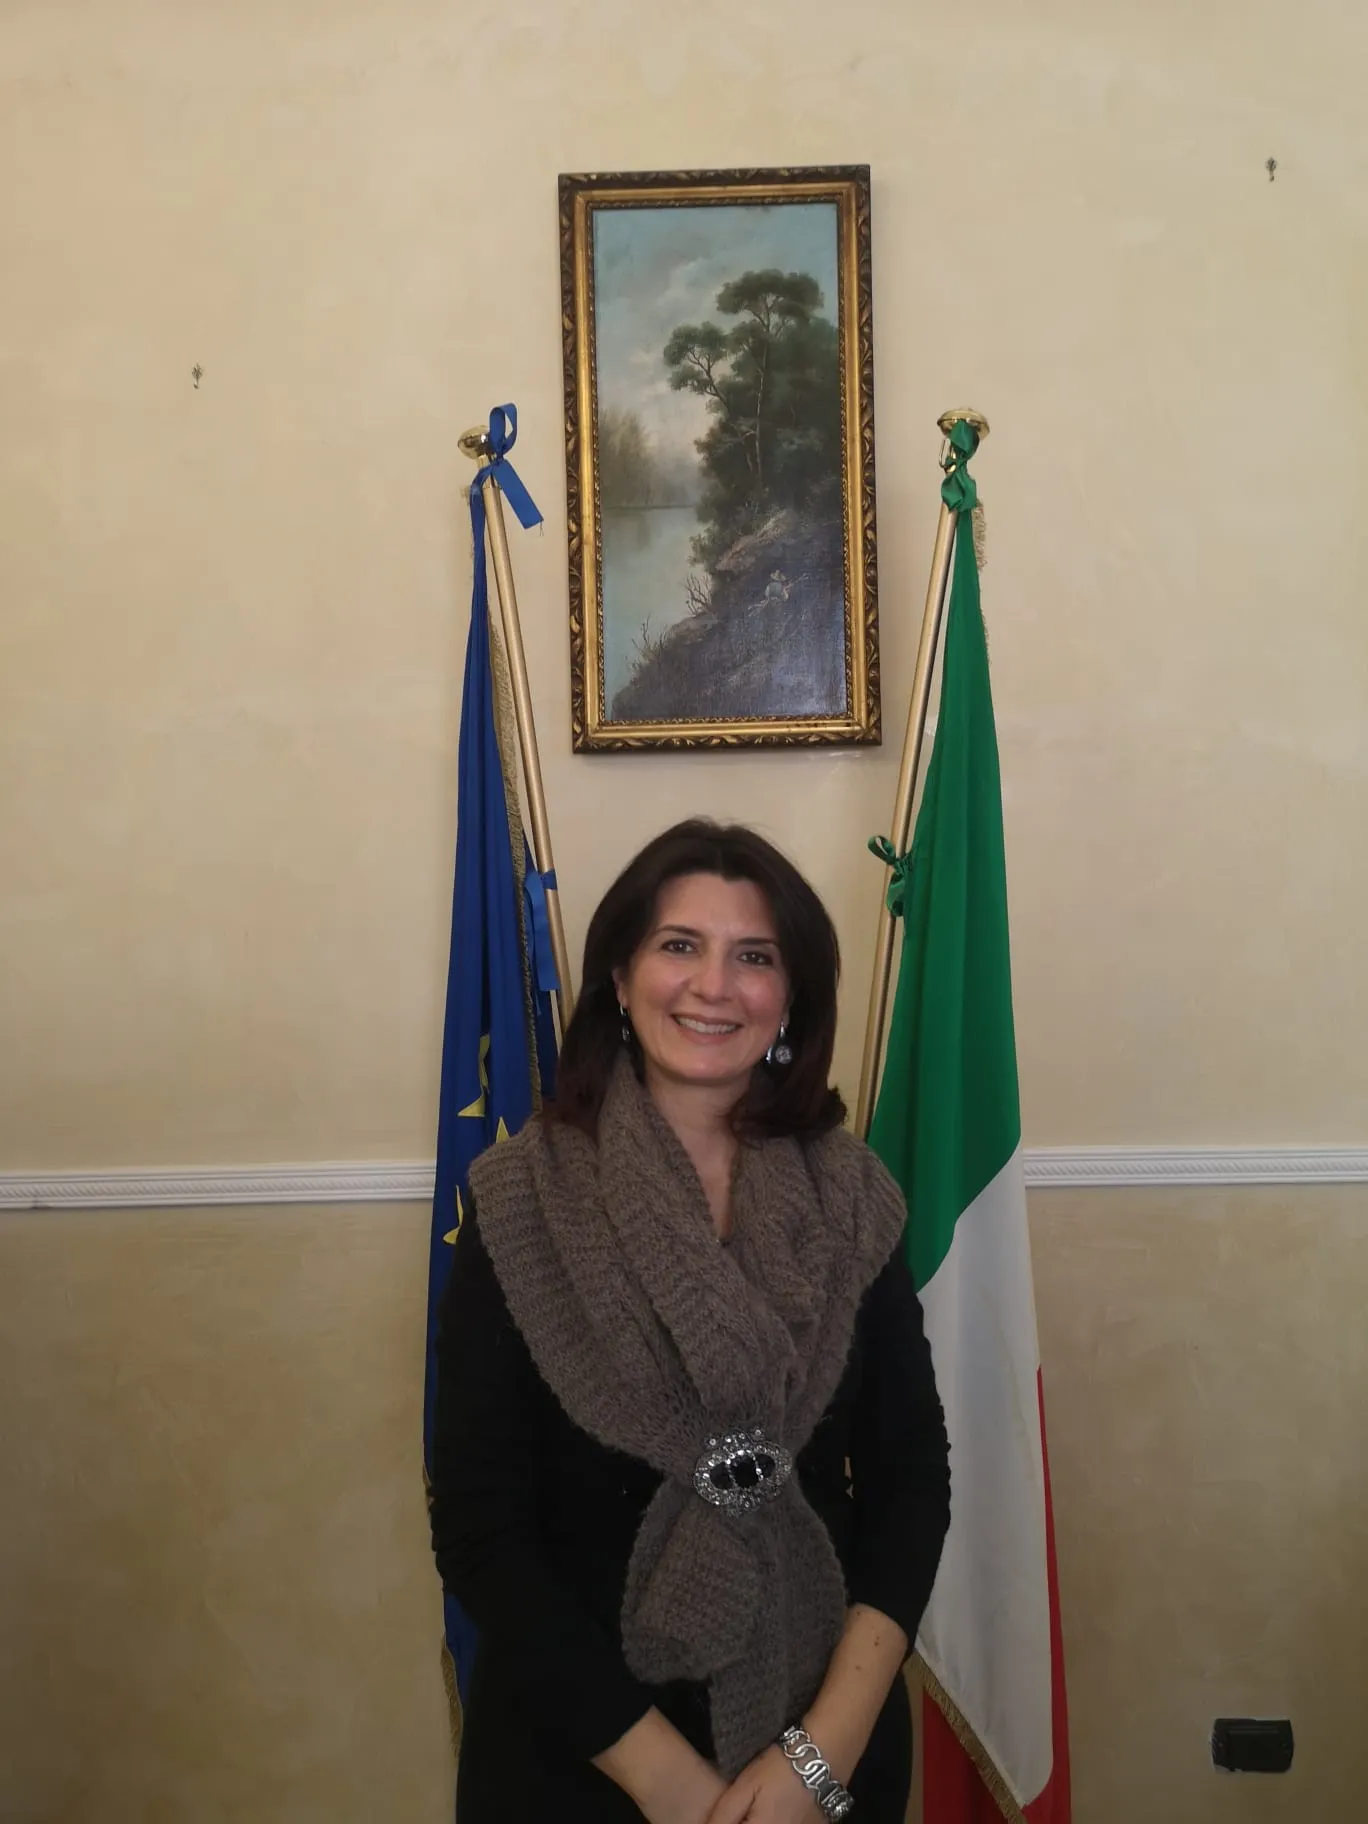 Salerno: FdI, adesione assessore comunale Daniela Ugliano conferenza stampa,